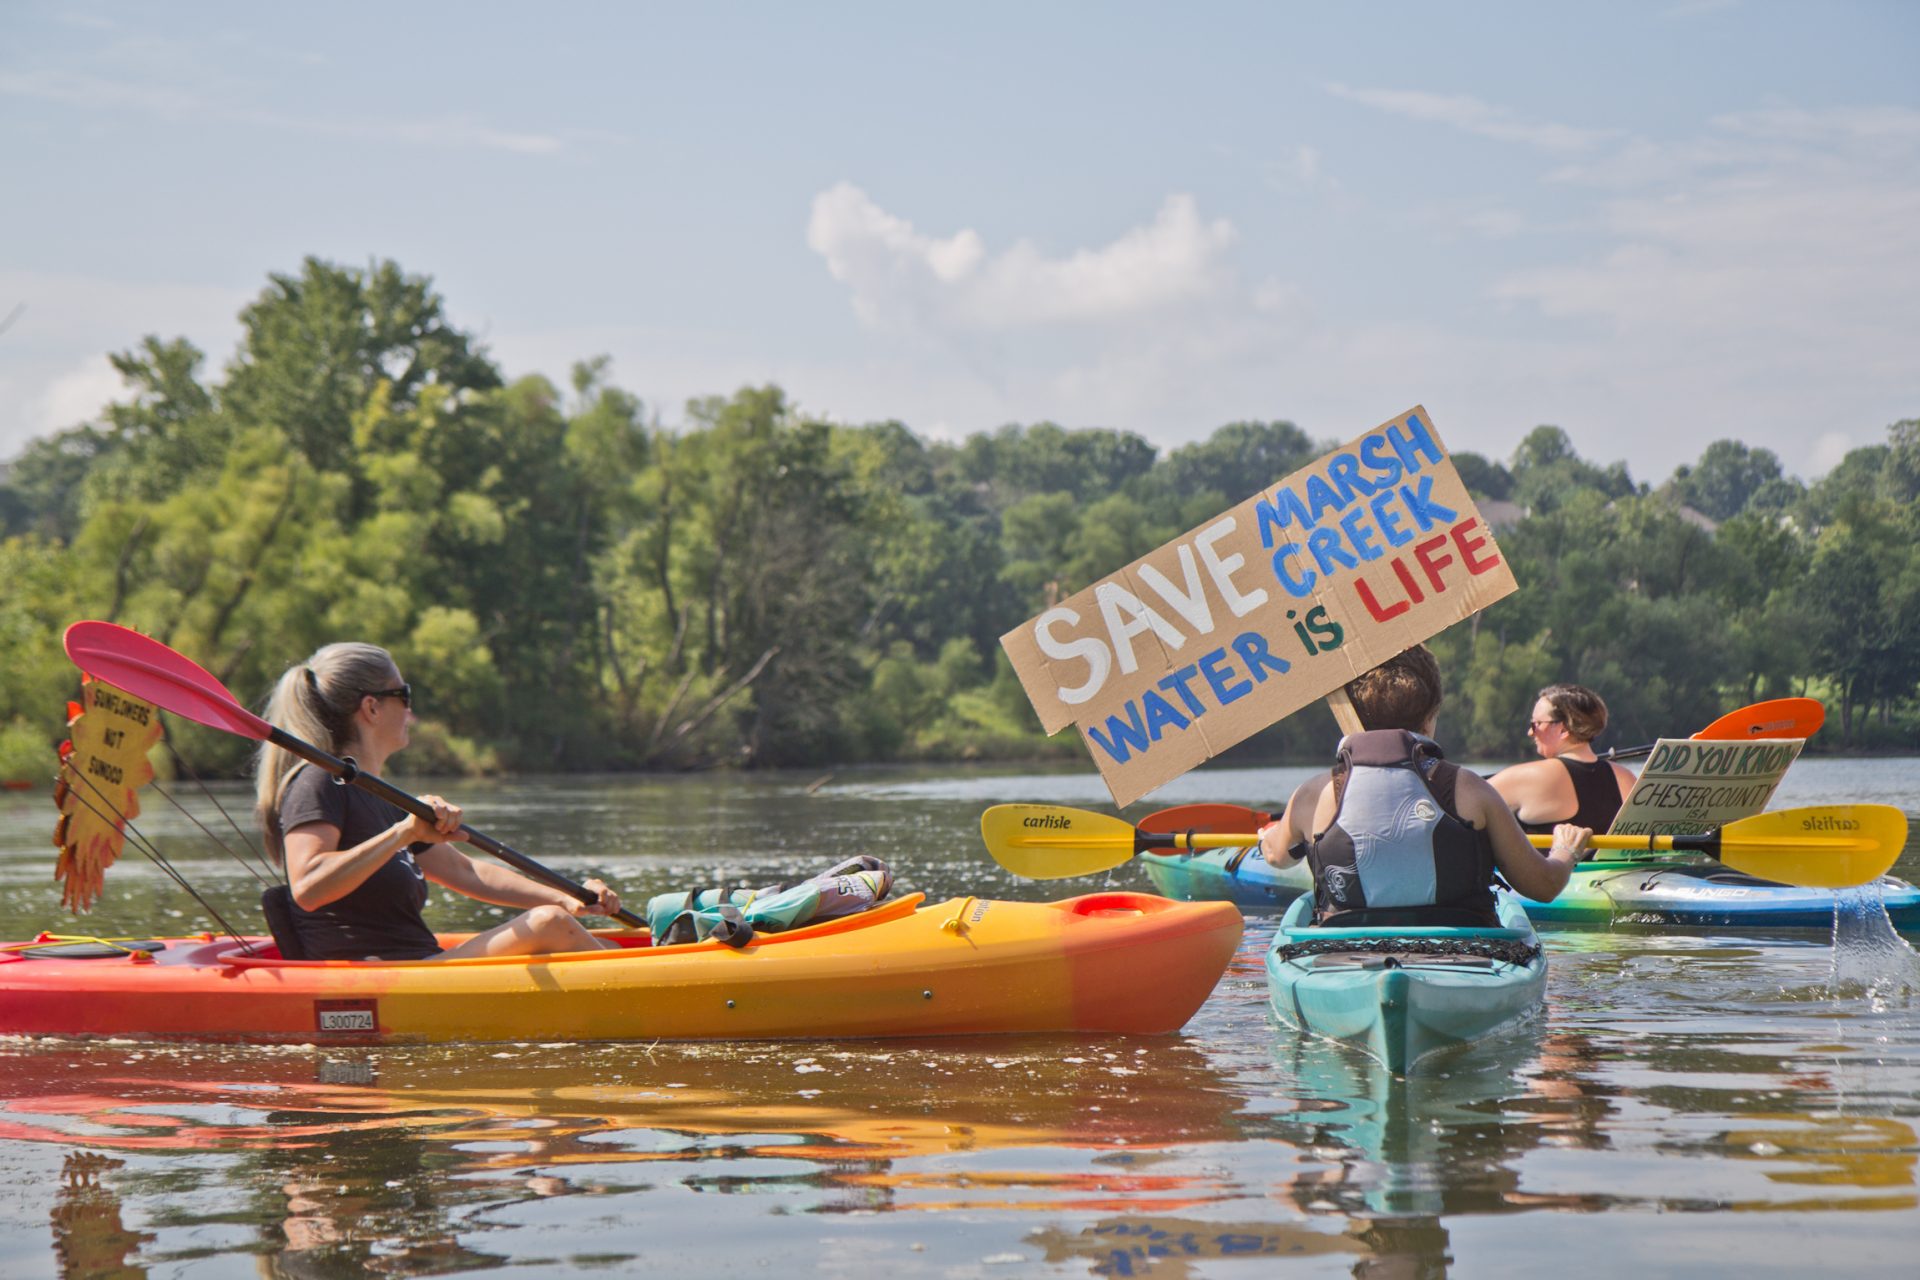 Protestors at Marsh Creek Lake